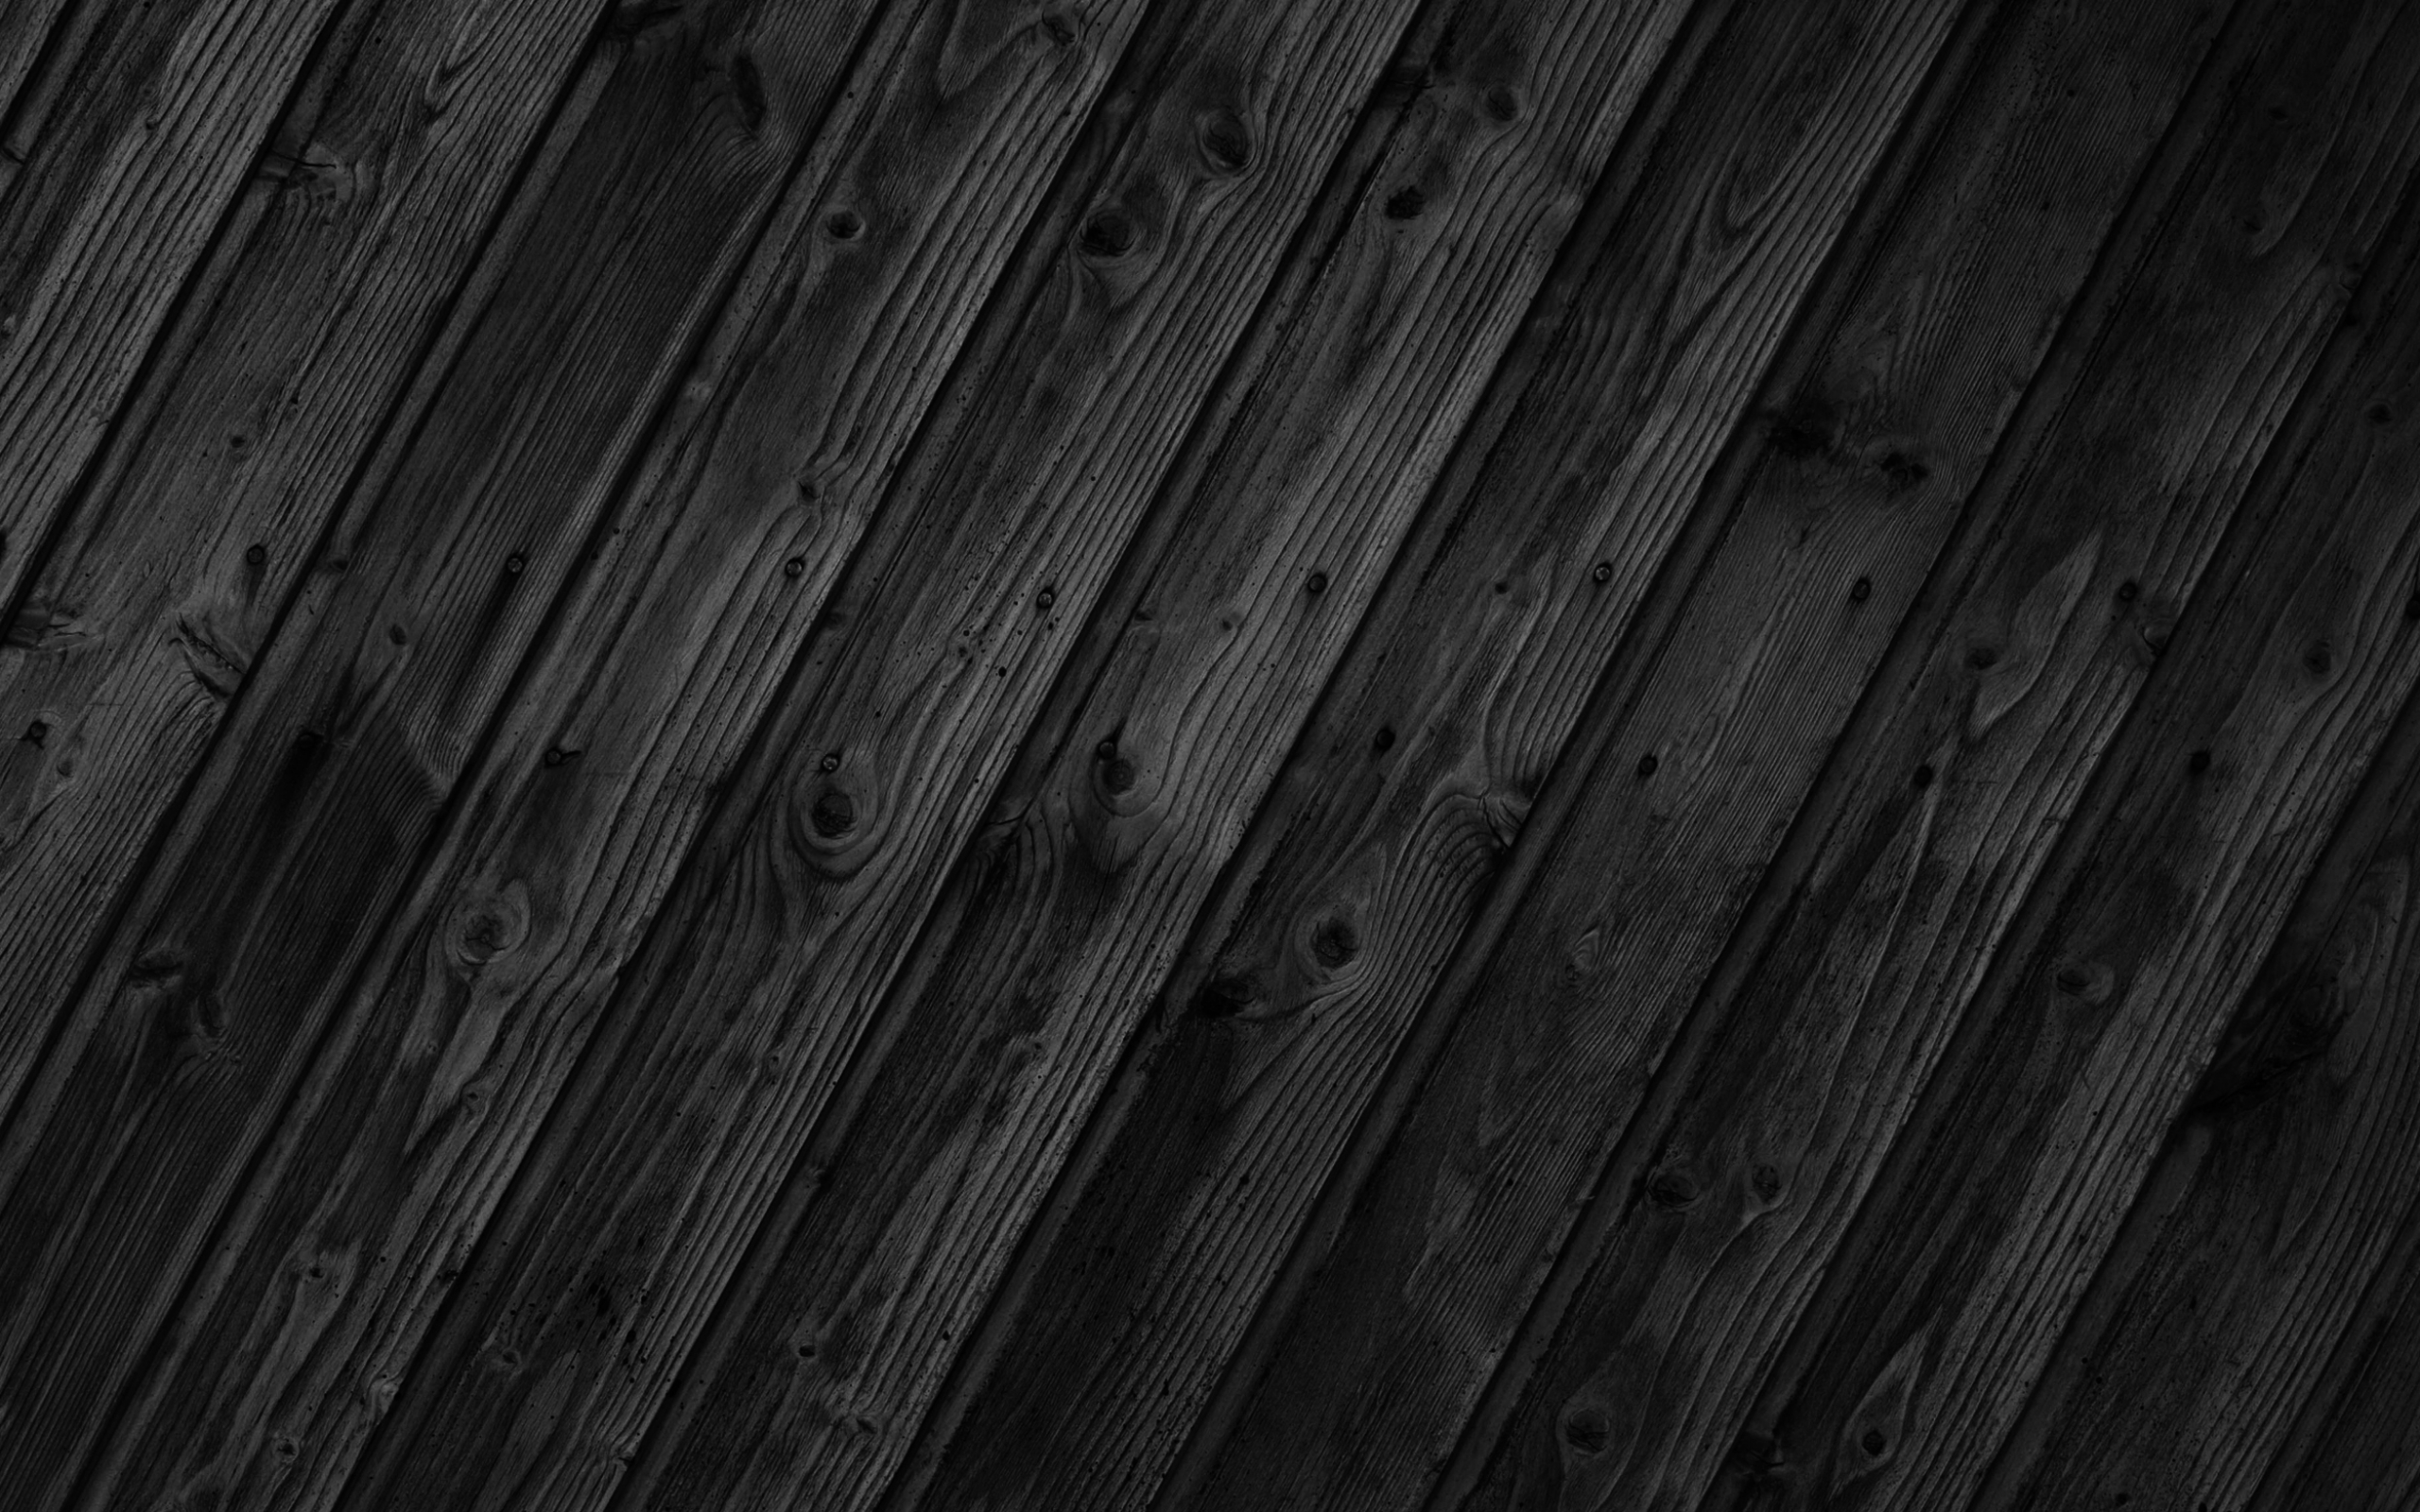 [47+] Black Wood Wallpaper on WallpaperSafari